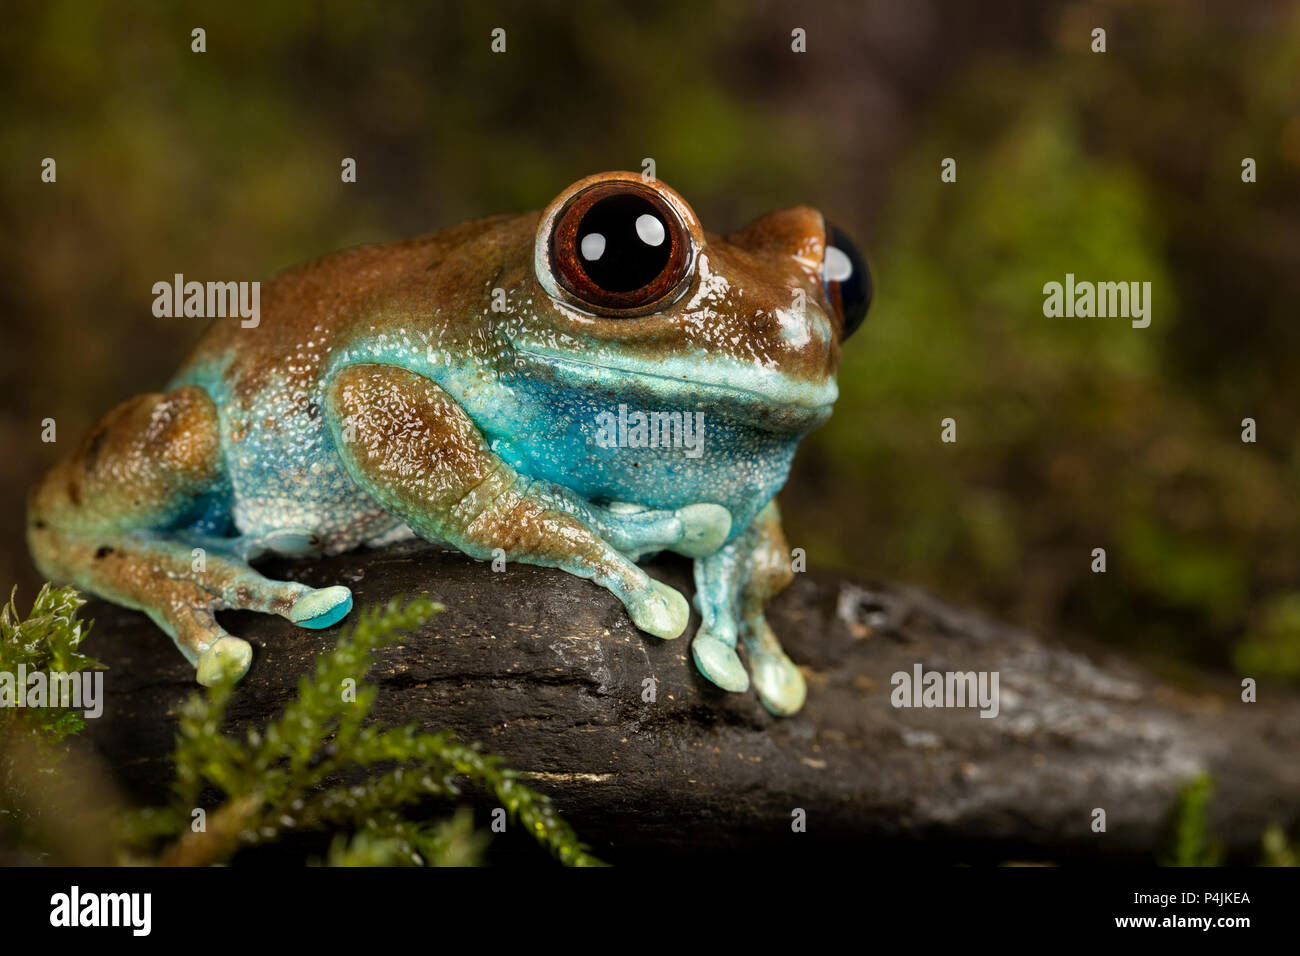 Ruby-eyed Tree Frog Foto de stock